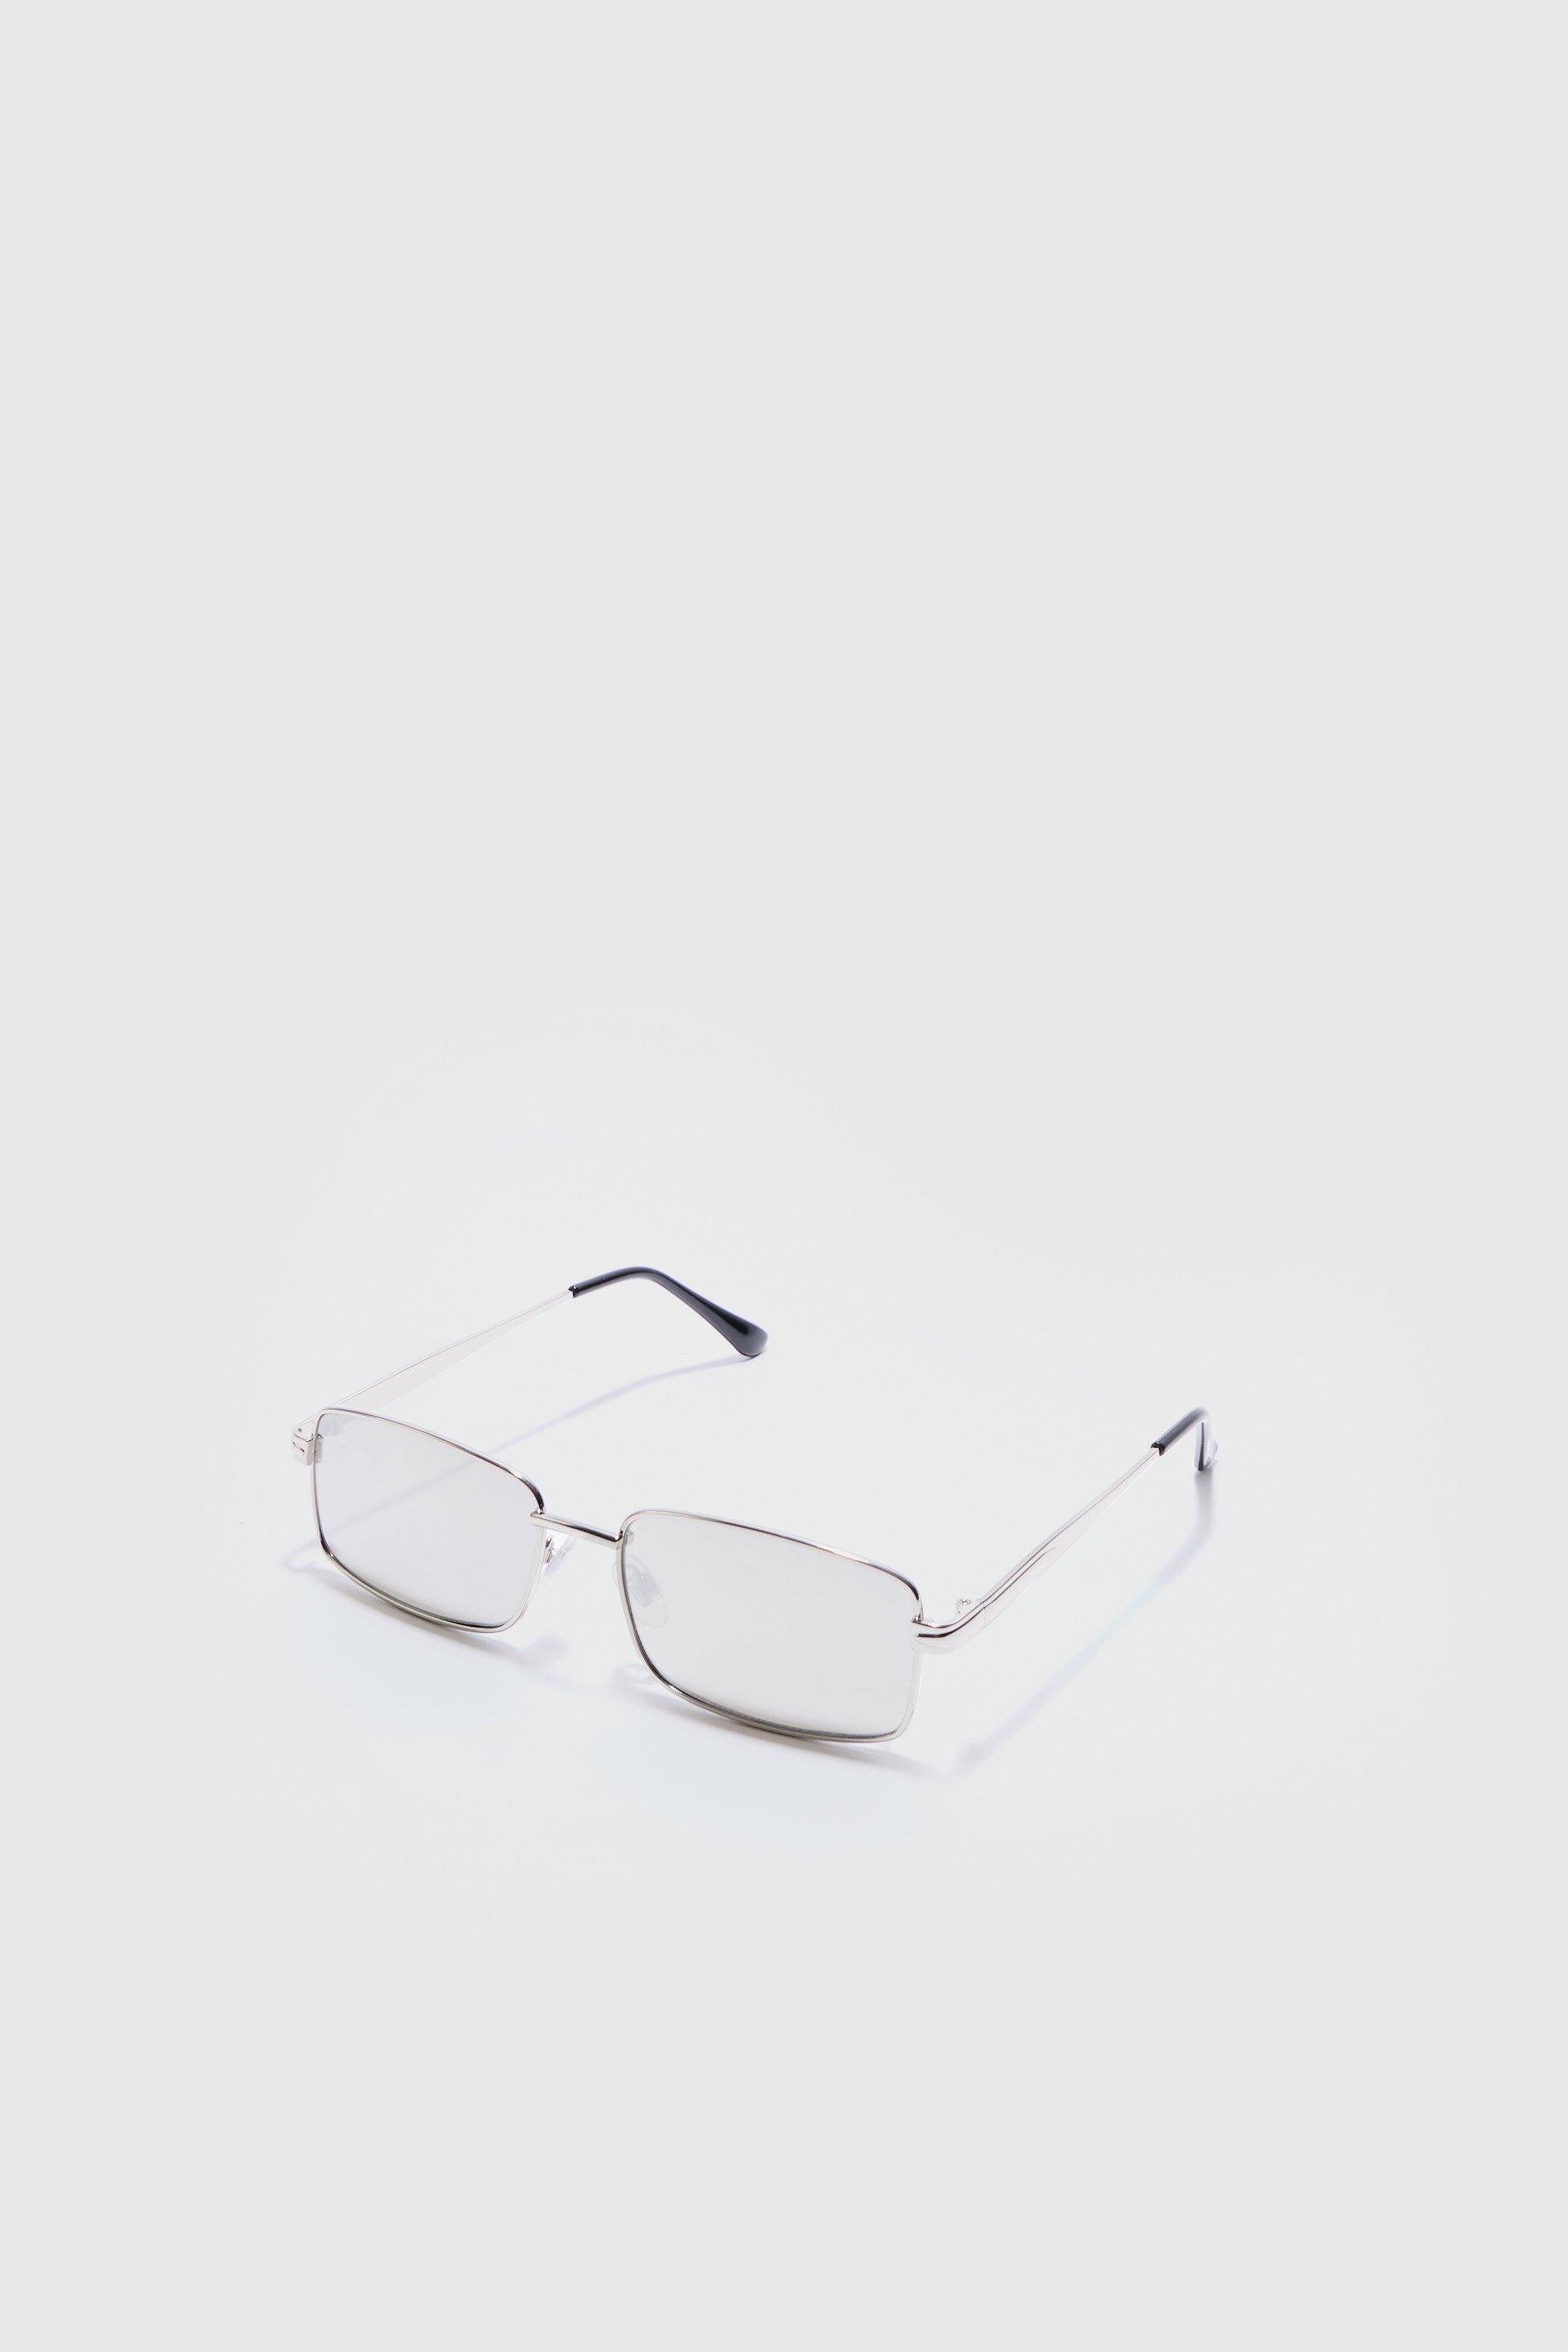 Image of Metal Rectangular Sunglasses In Silver, Grigio